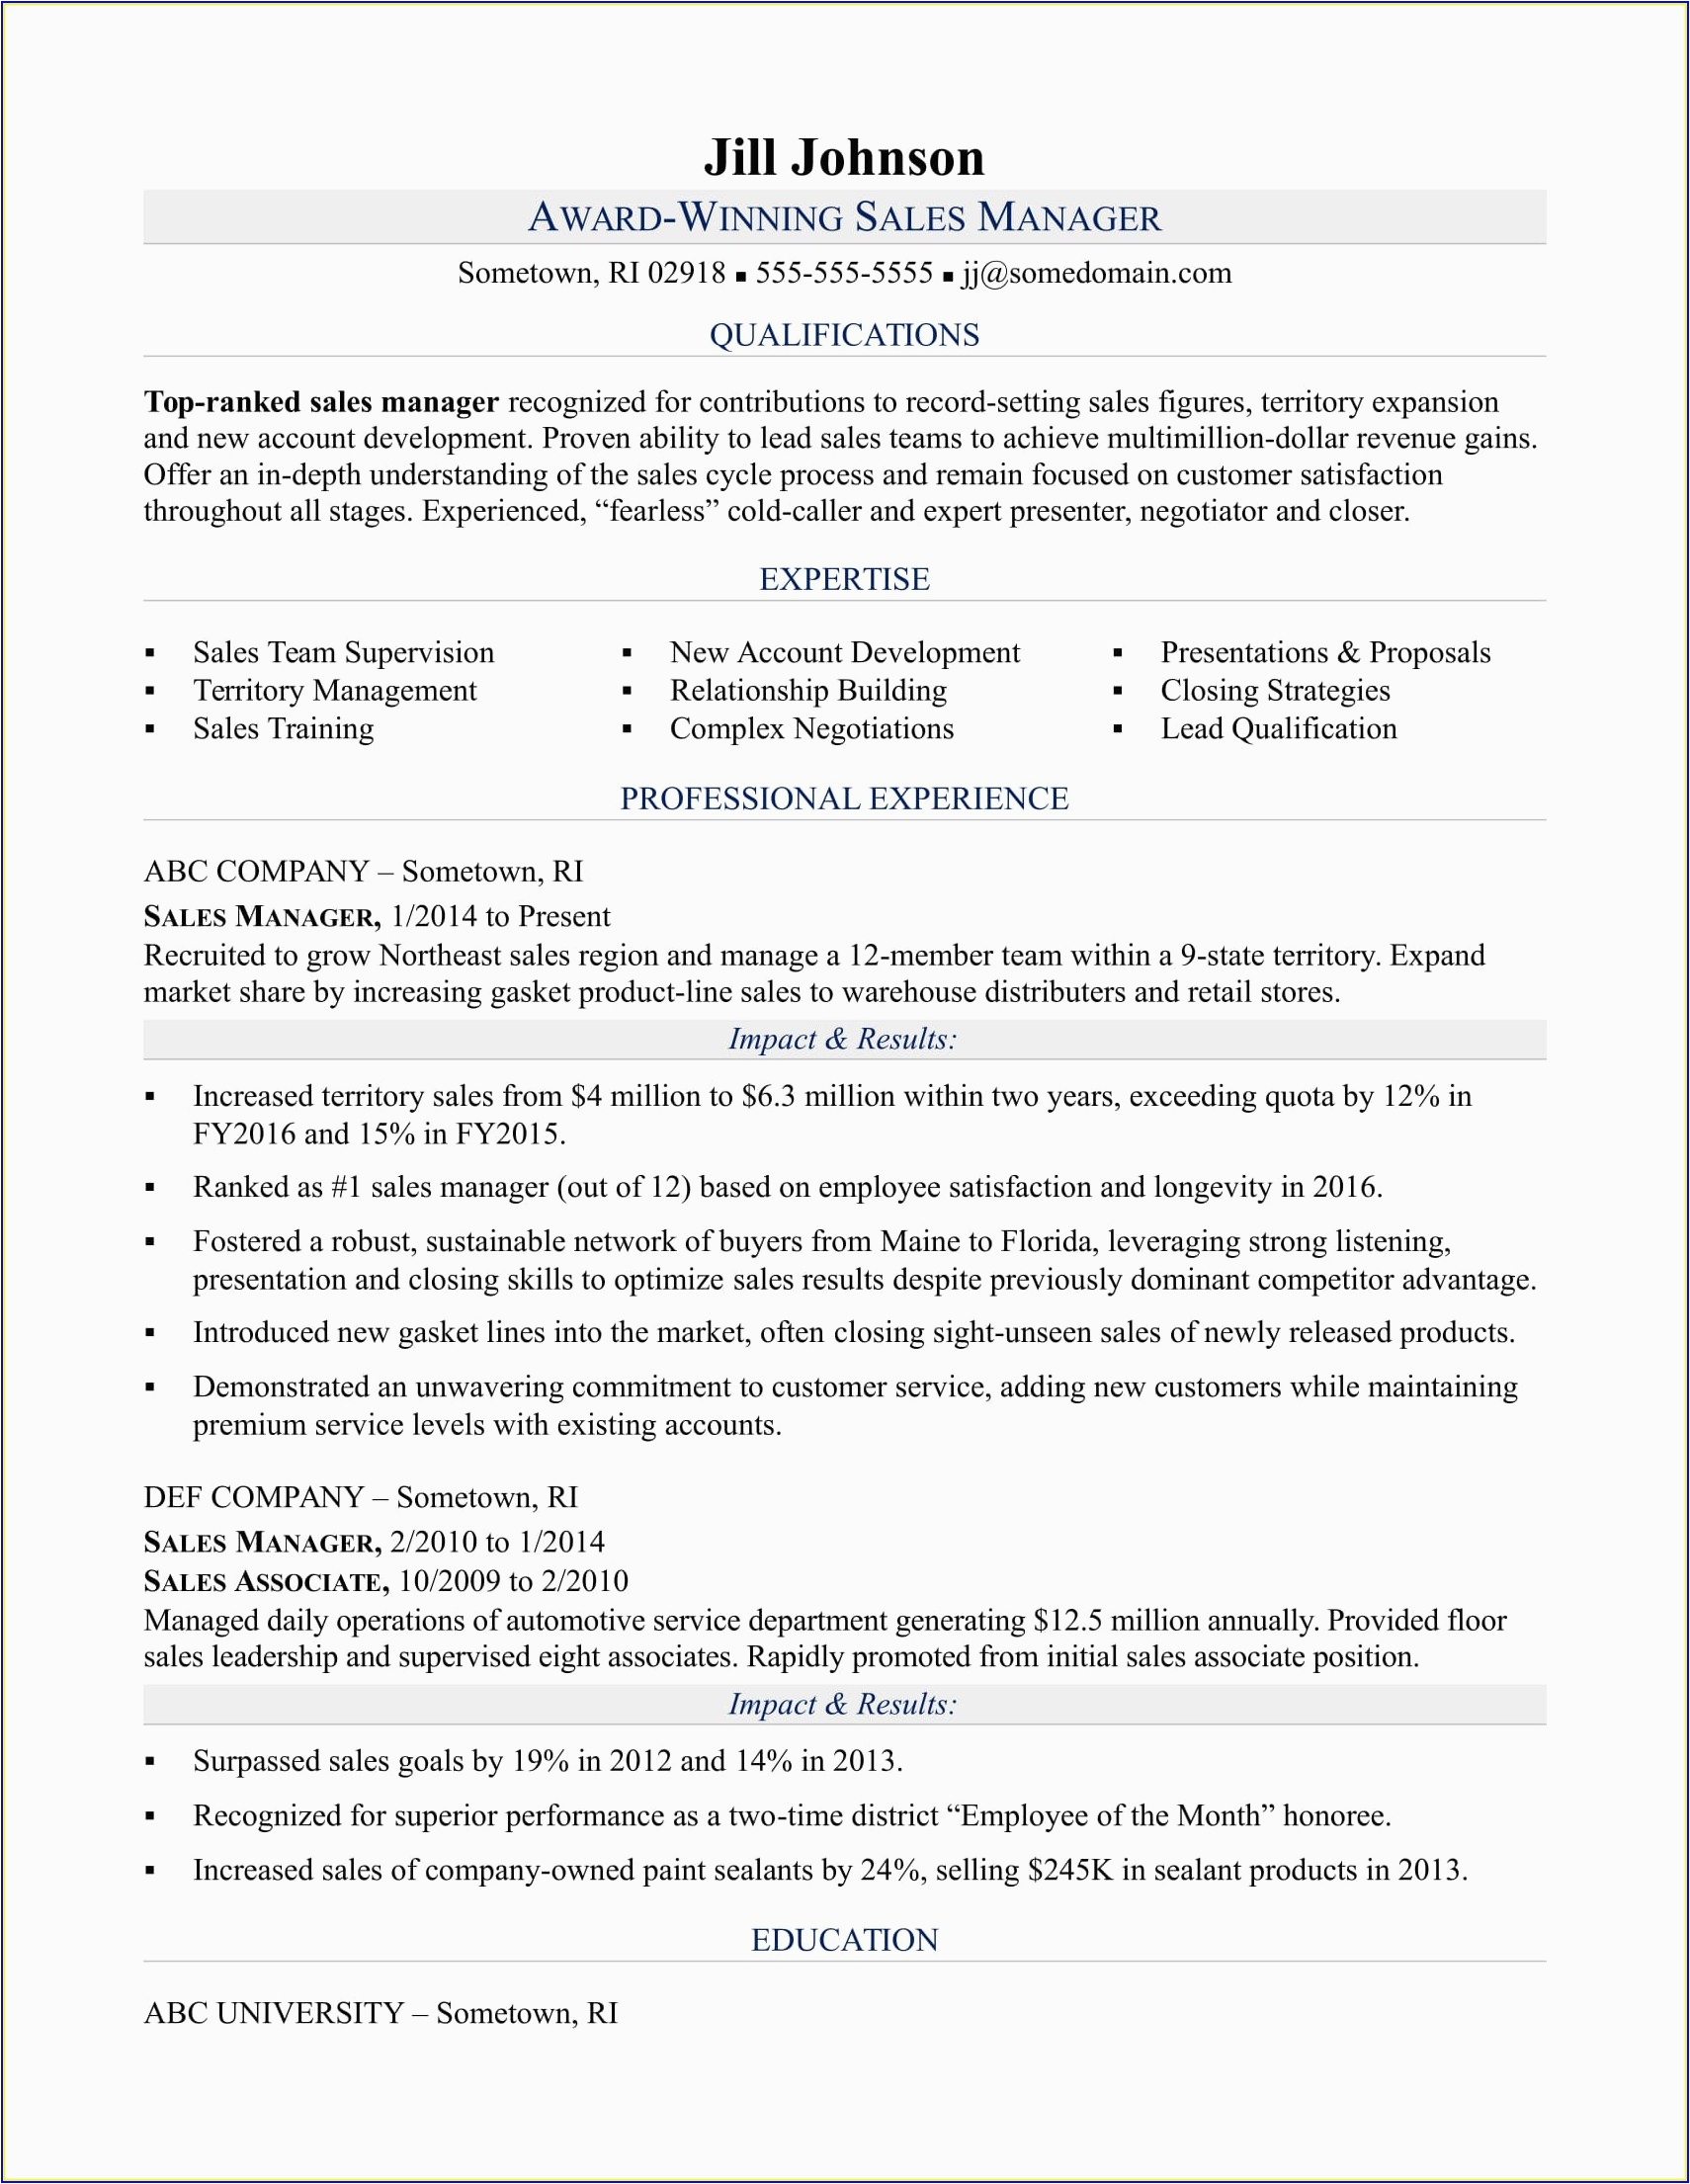 Sample Resume for Warehouse Supervisor Position Warehouse Supervisor Job Description Resume Sample